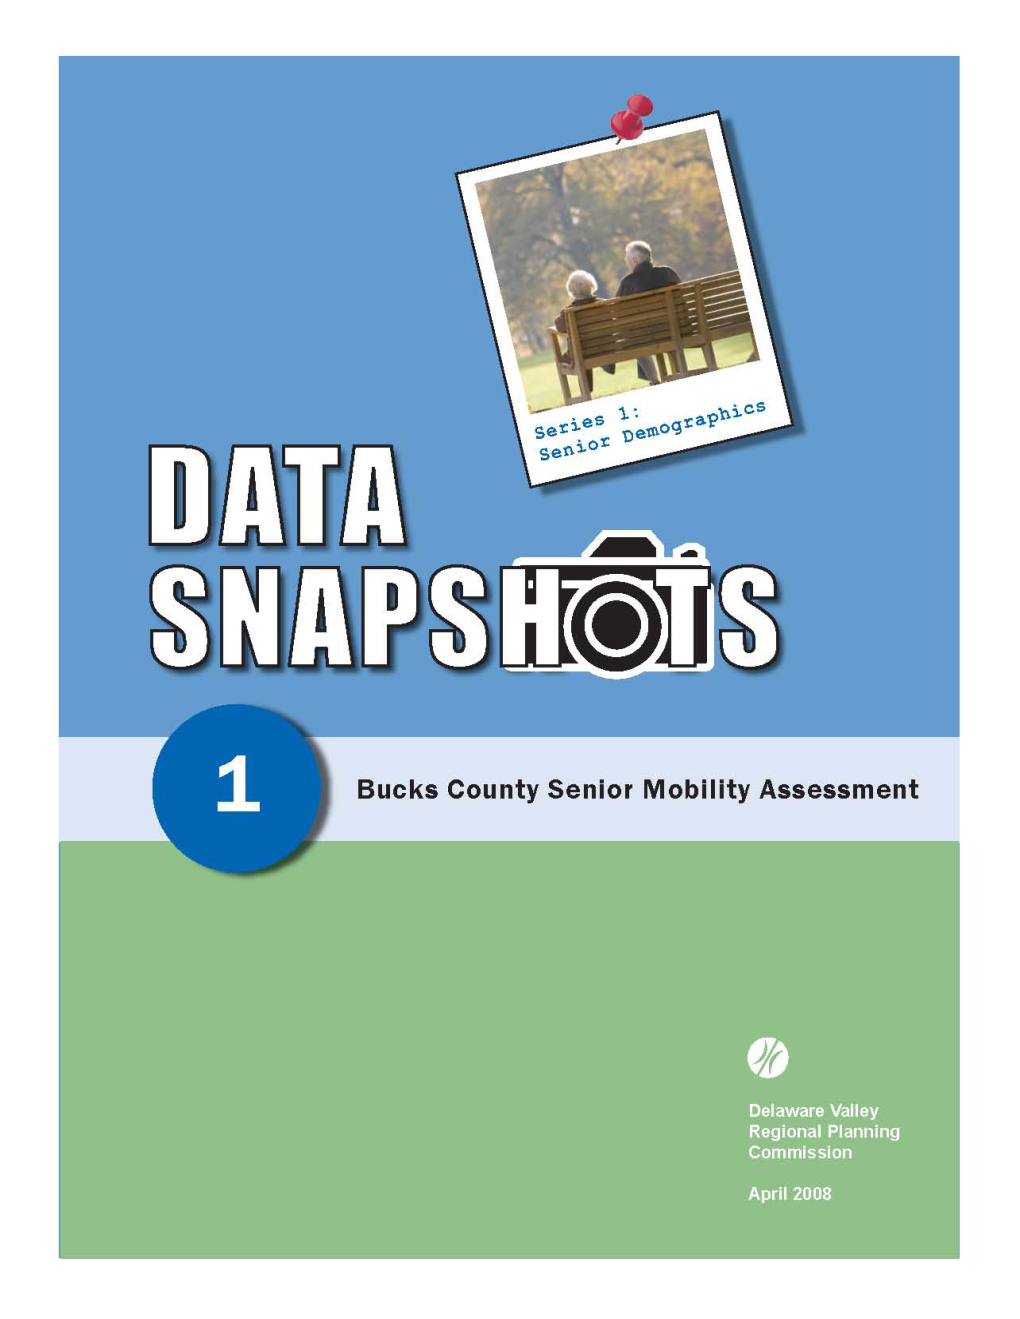 Bucks County Senior Mobility Assessment